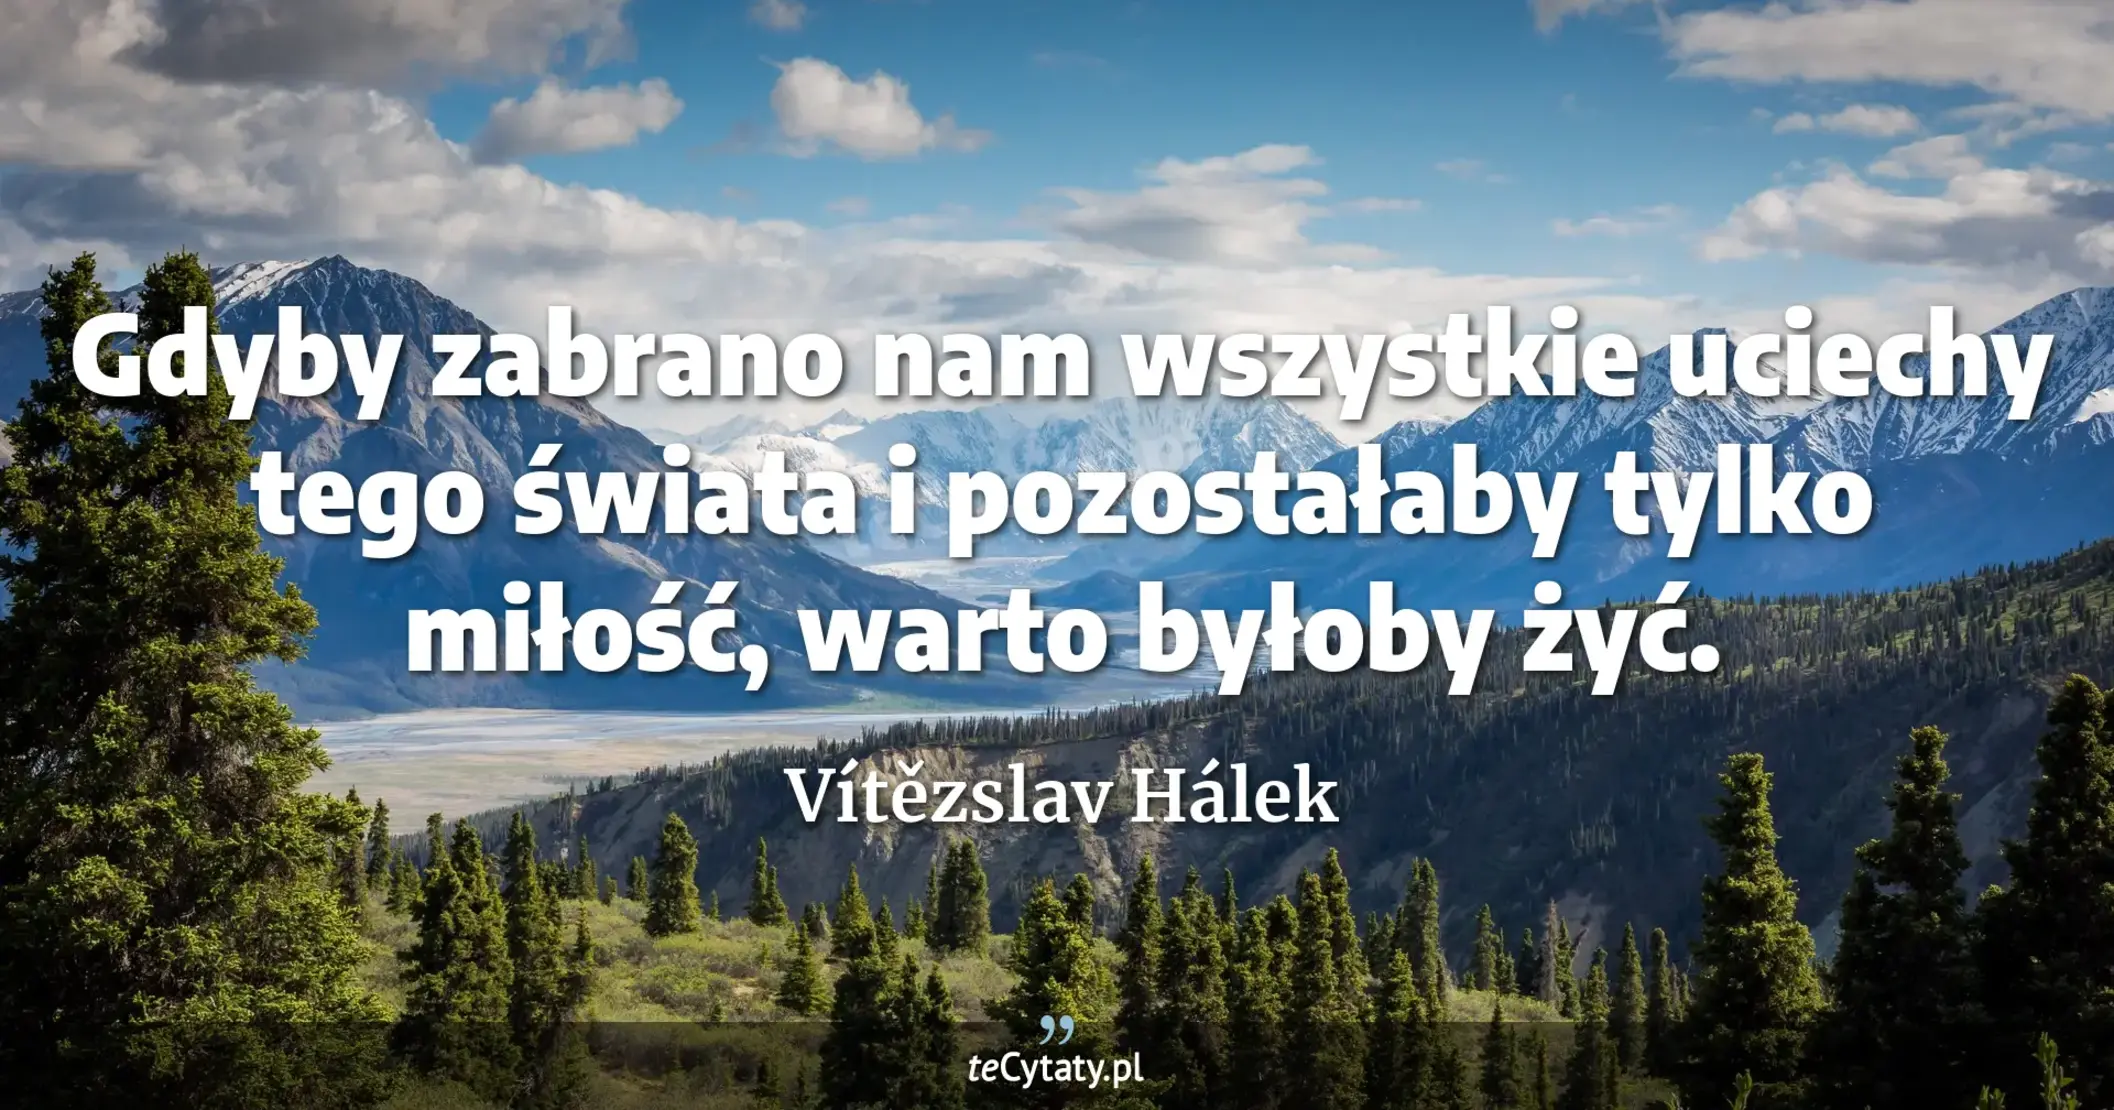 Gdyby zabrano nam wszystkie uciechy tego świata i pozostałaby tylko miłość, warto byłoby żyć. - Vítězslav Hálek